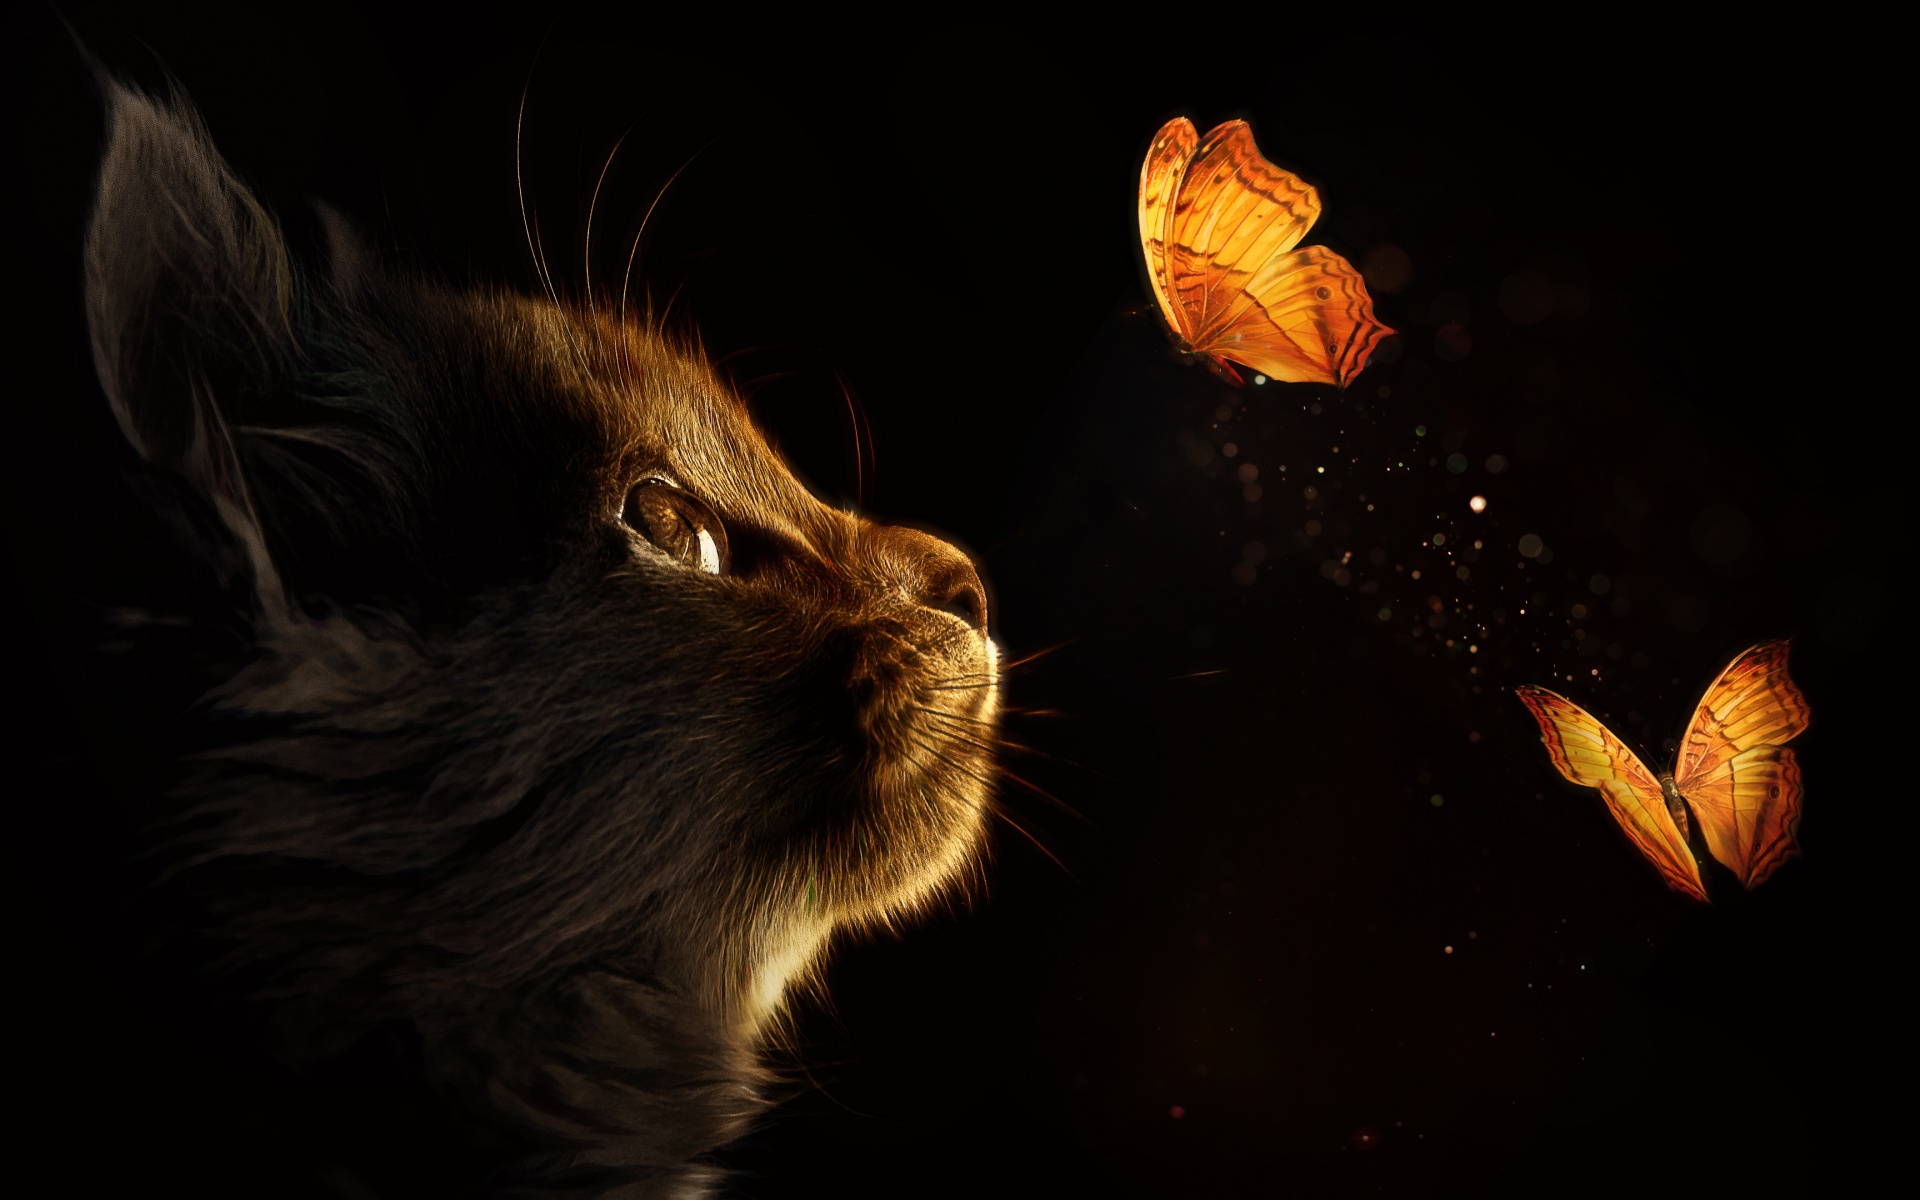 Kitten 4K Wallpaper, Cat, Butterflies, Black background, Glowing